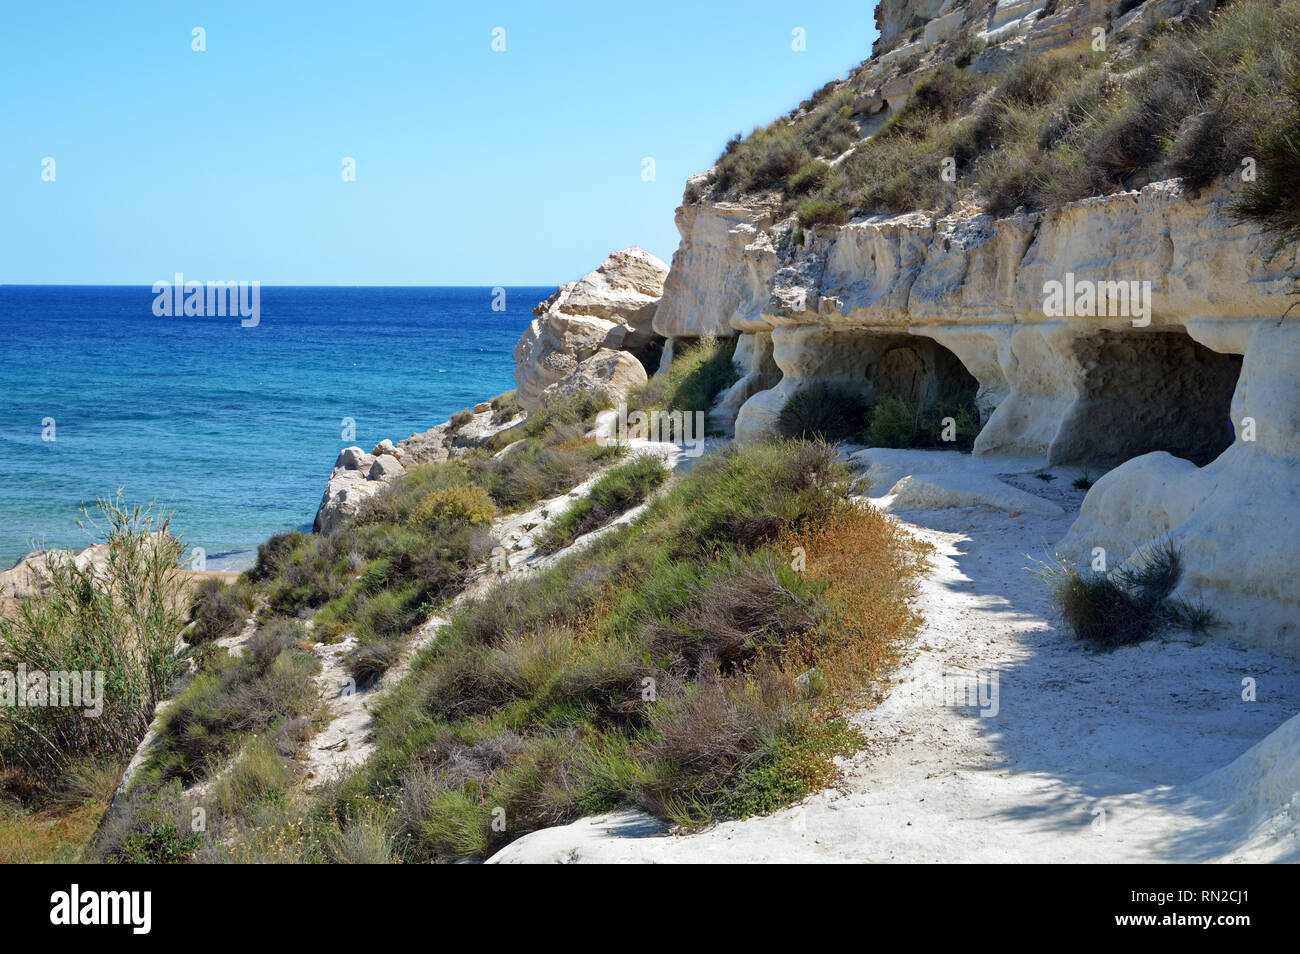 Che circondano la bella cittadina di Agua Amarga nel Parco Naturale Cabo de Gata (Spagna) sono fantastiche scogliere sul mare con grotte scavate nella roccia. Foto Stock